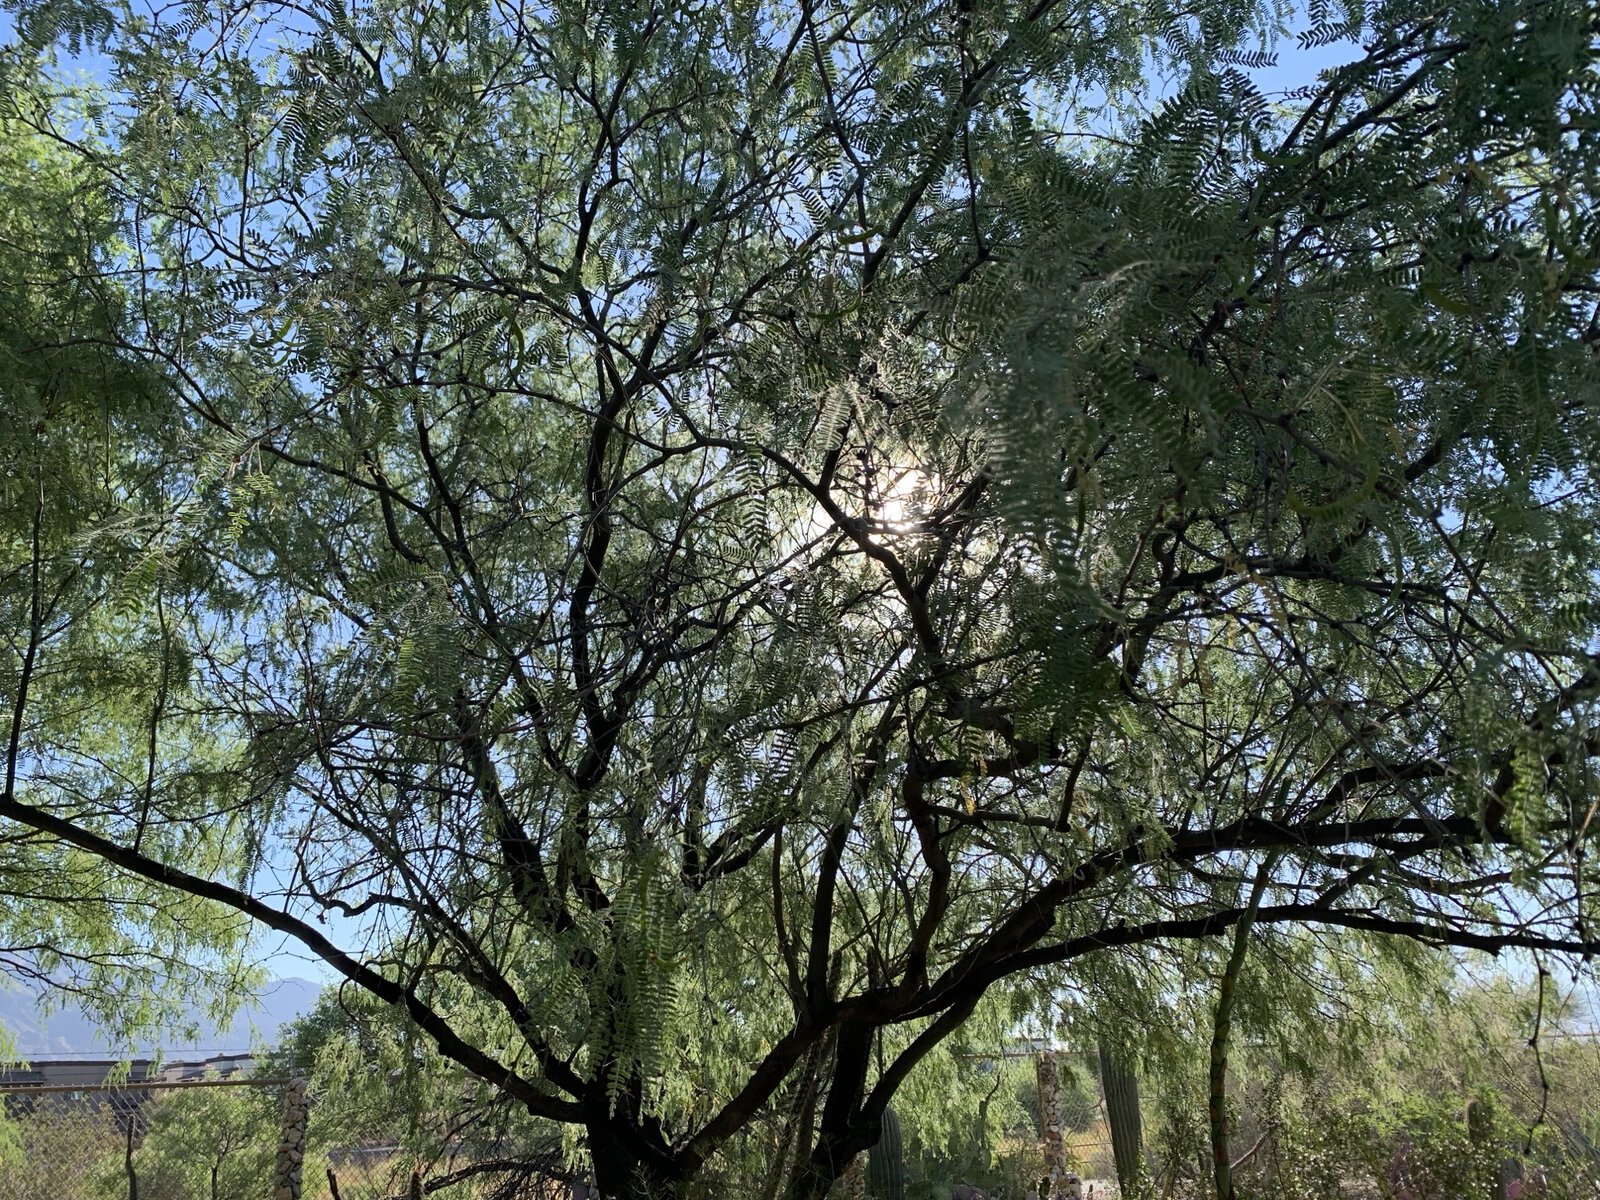 A mesquite tree.